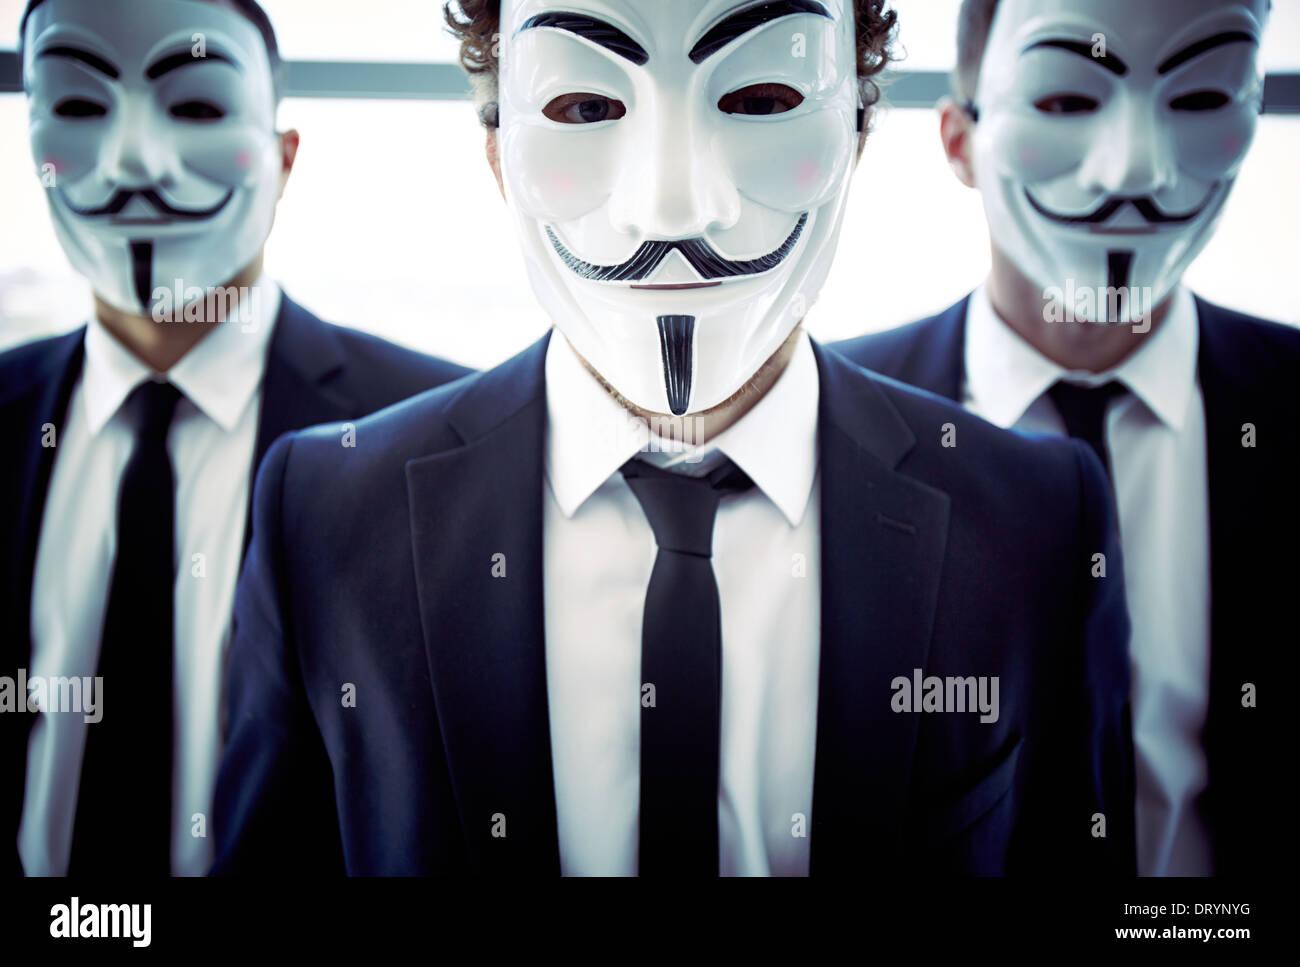 Portrait d'une équipe entreprises avec leurs visages sont couverts avec des masques Banque D'Images